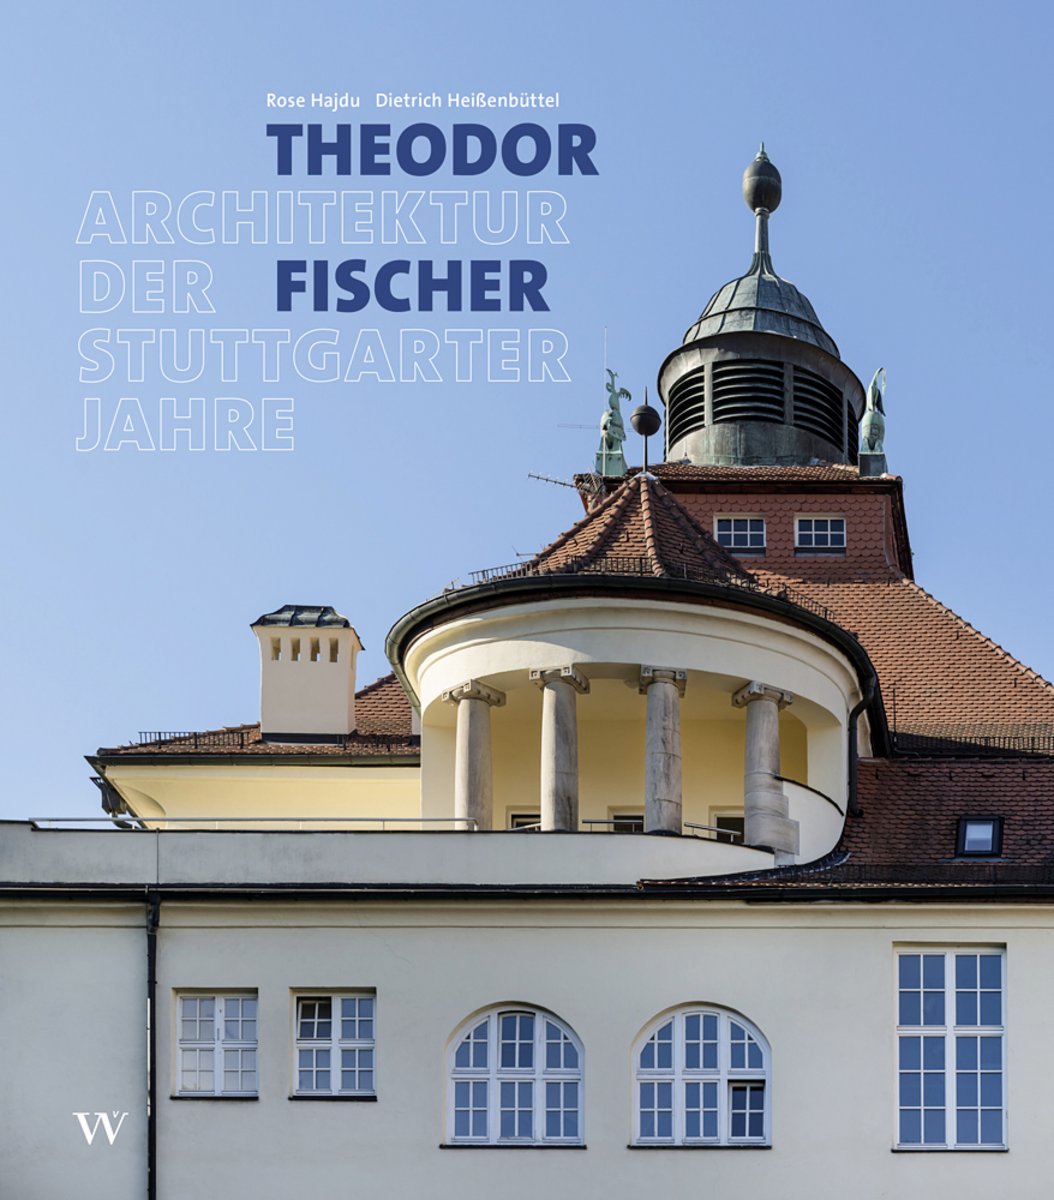 Theodor Fischer: Architektur der Stuttgarter Jahre